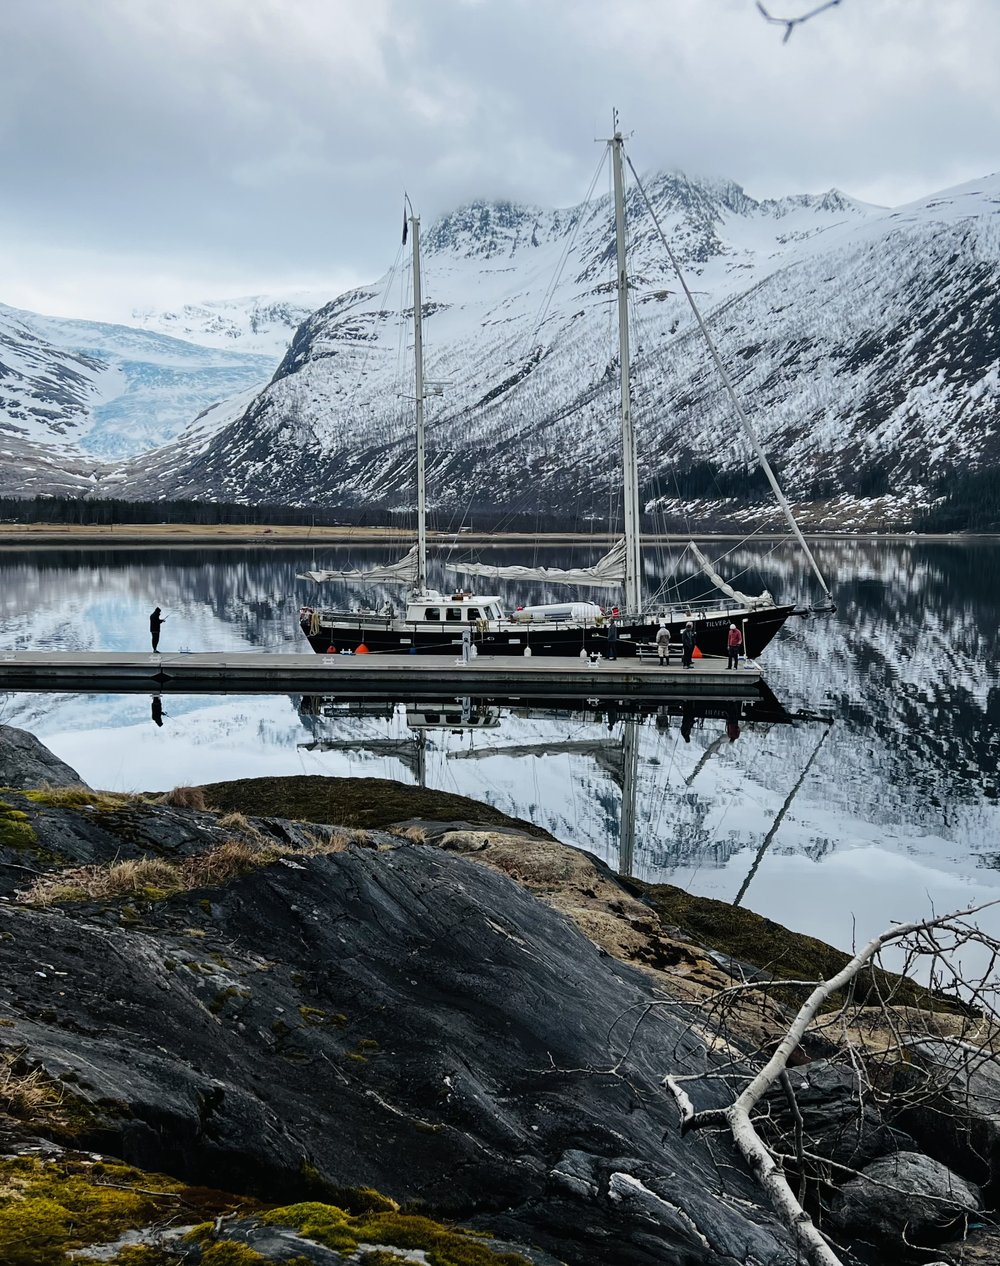  Docking by the lake by Svartisen glacier. ©Belén Garcia Ovide 